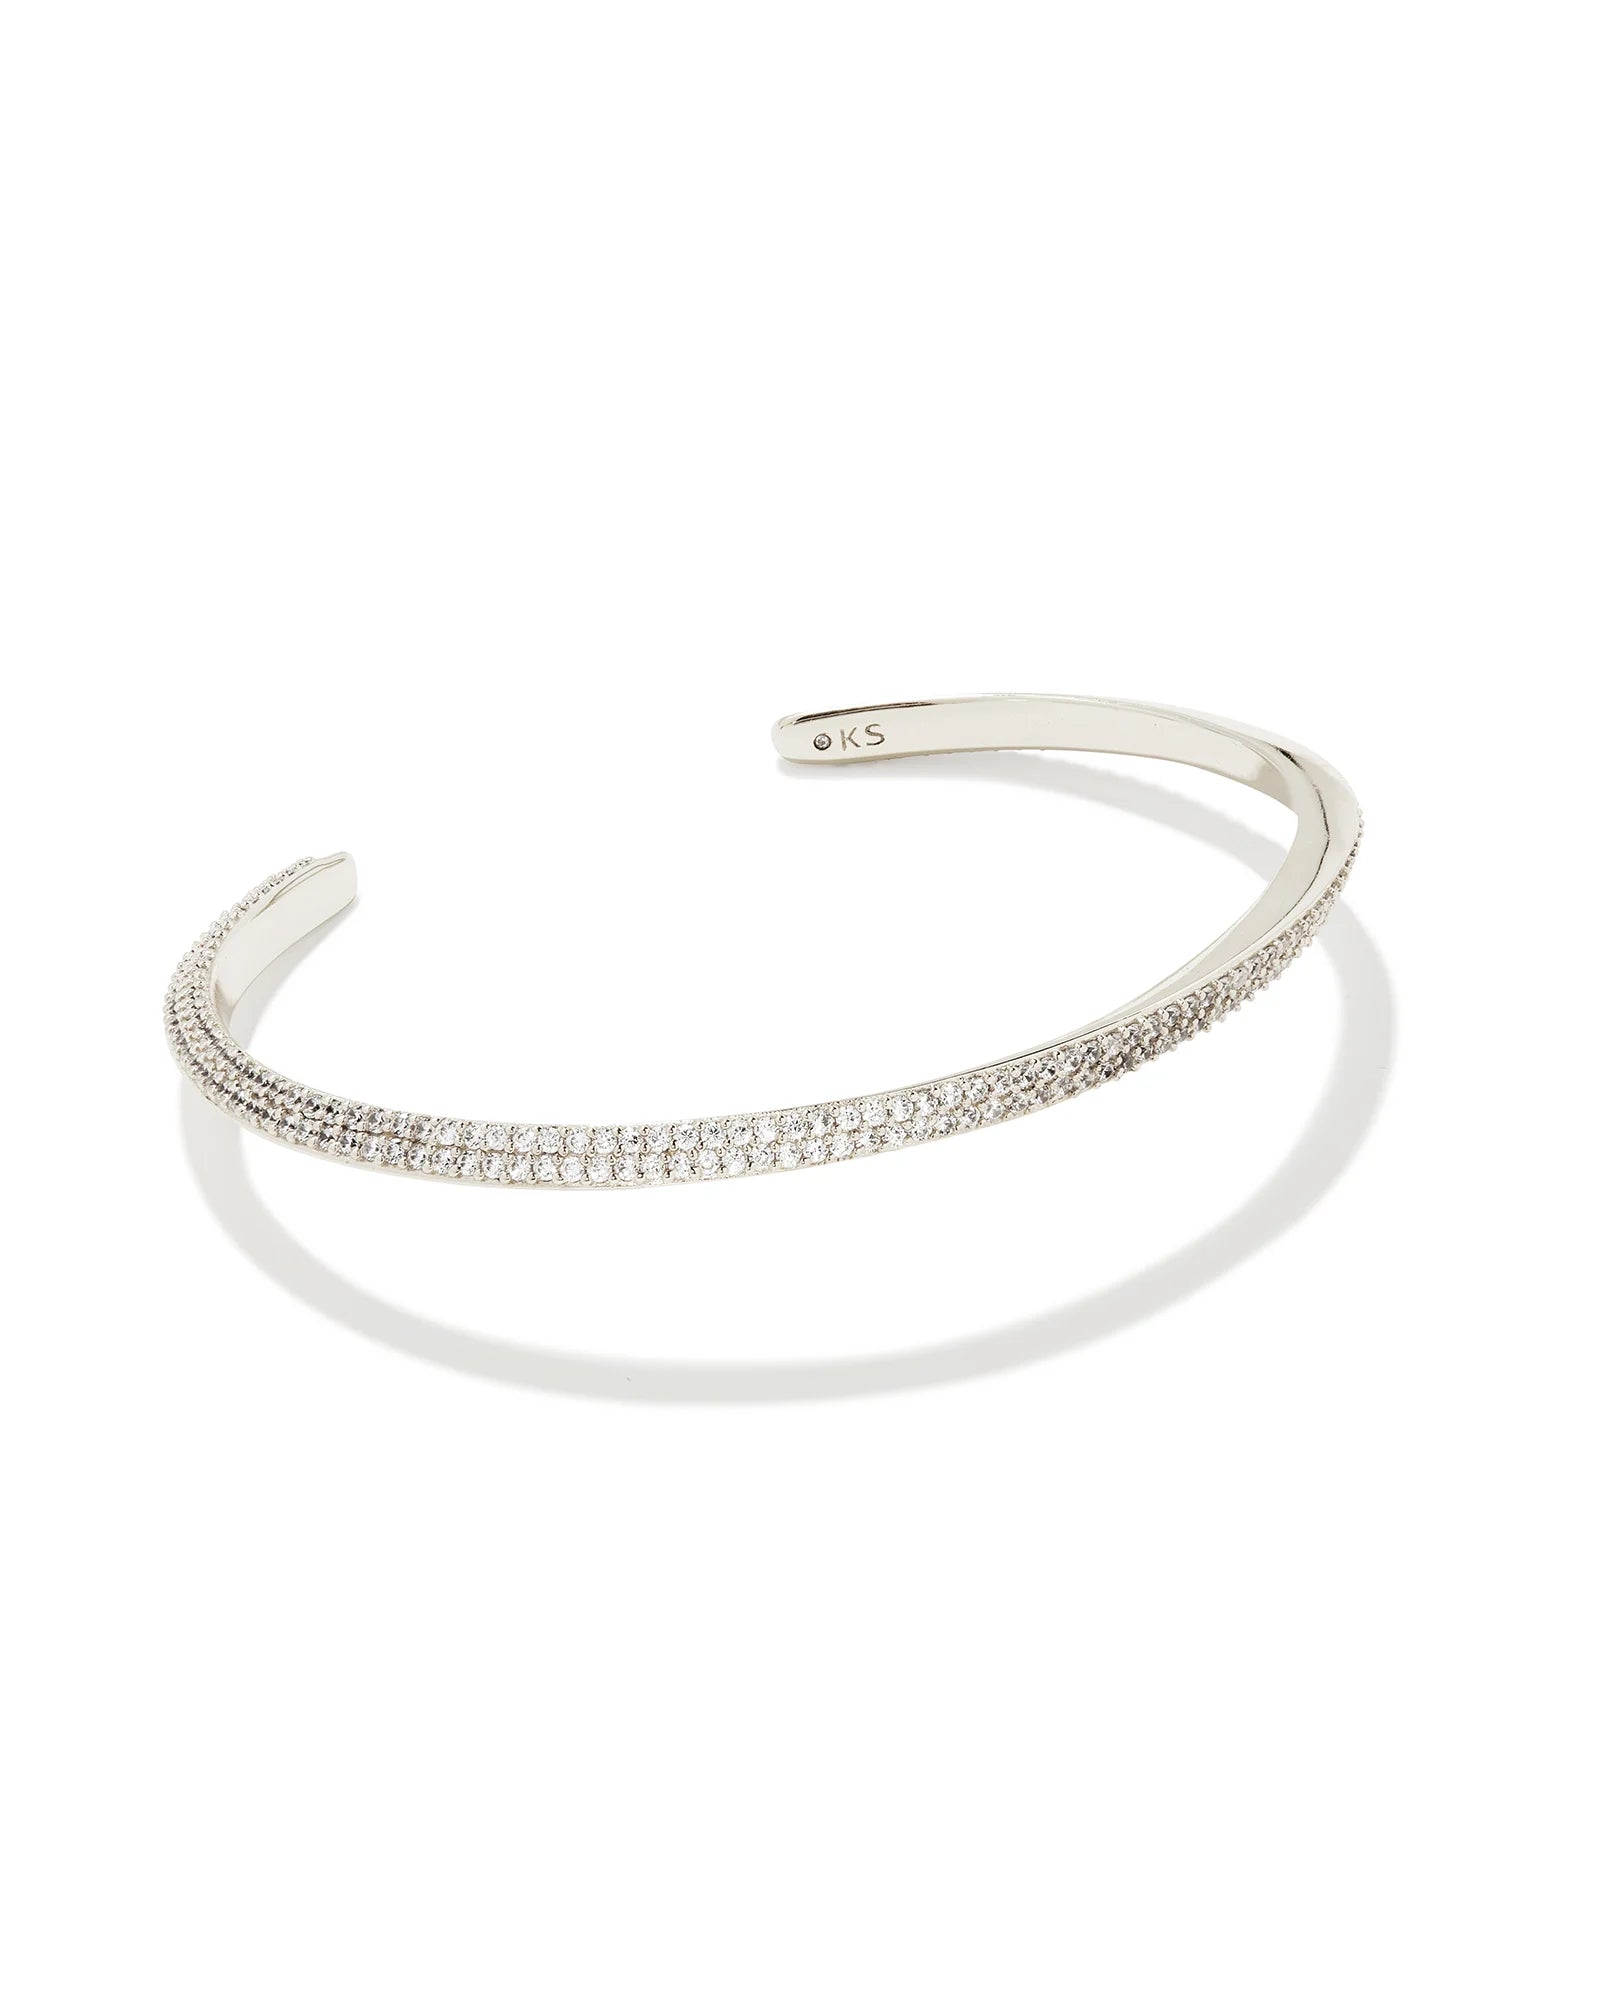 KENDRA SCOTT- Ella Silver Cuff Bracelet in White Crystal